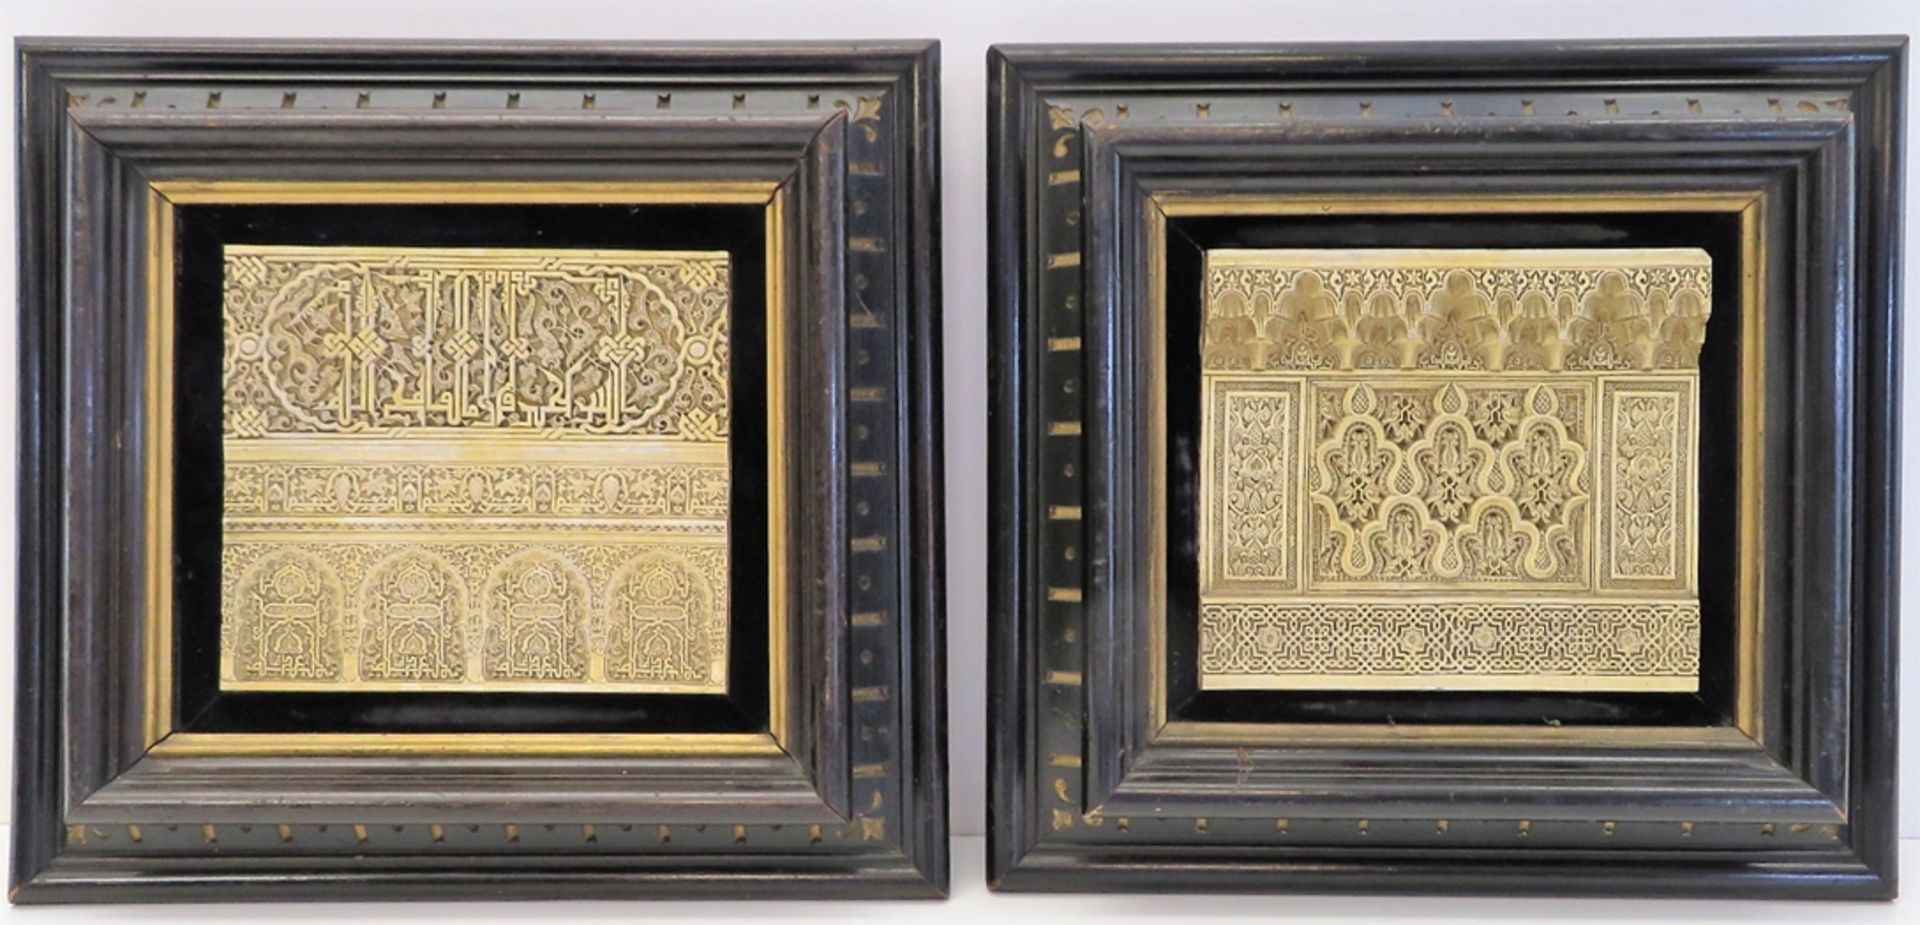 2 Relief-Arbeiten, Alhambra, Kunstguss, gerahmt, 30 x 31 x 5 cm. - Image 2 of 3